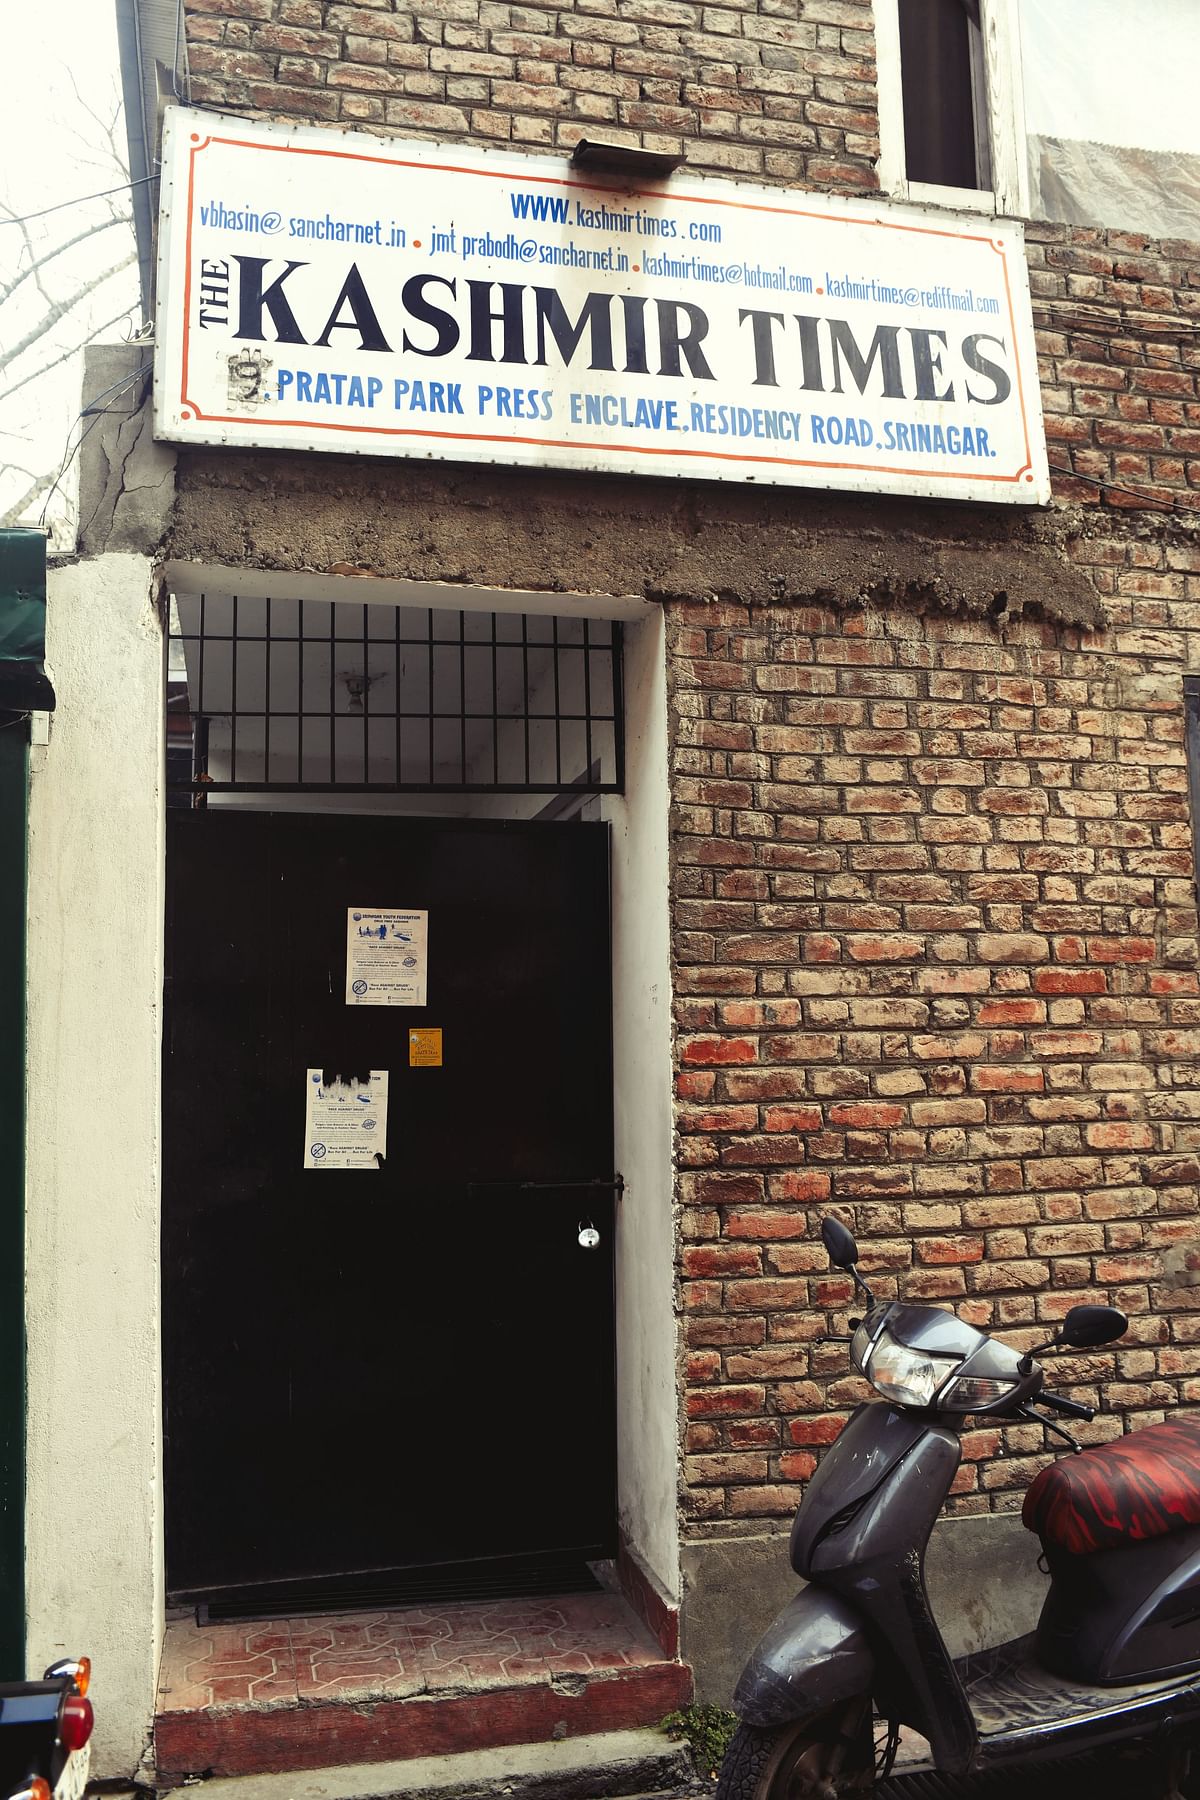 <div class="paragraphs"><p>The office of Kashmir Times</p></div>